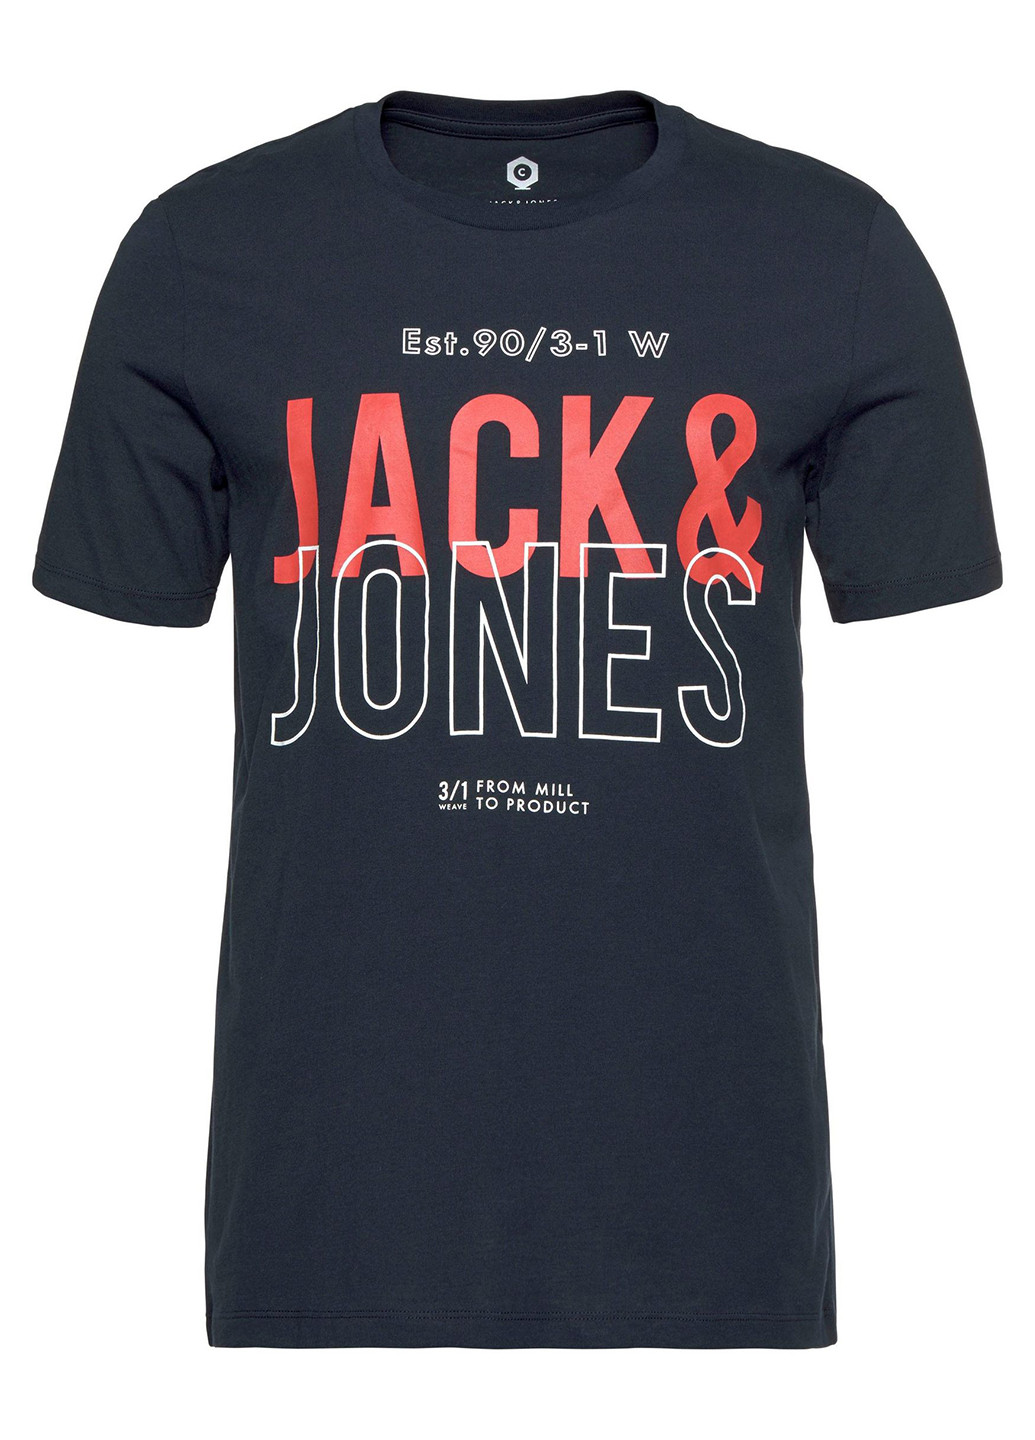 Темно-синя літня футболка Jack & Jones